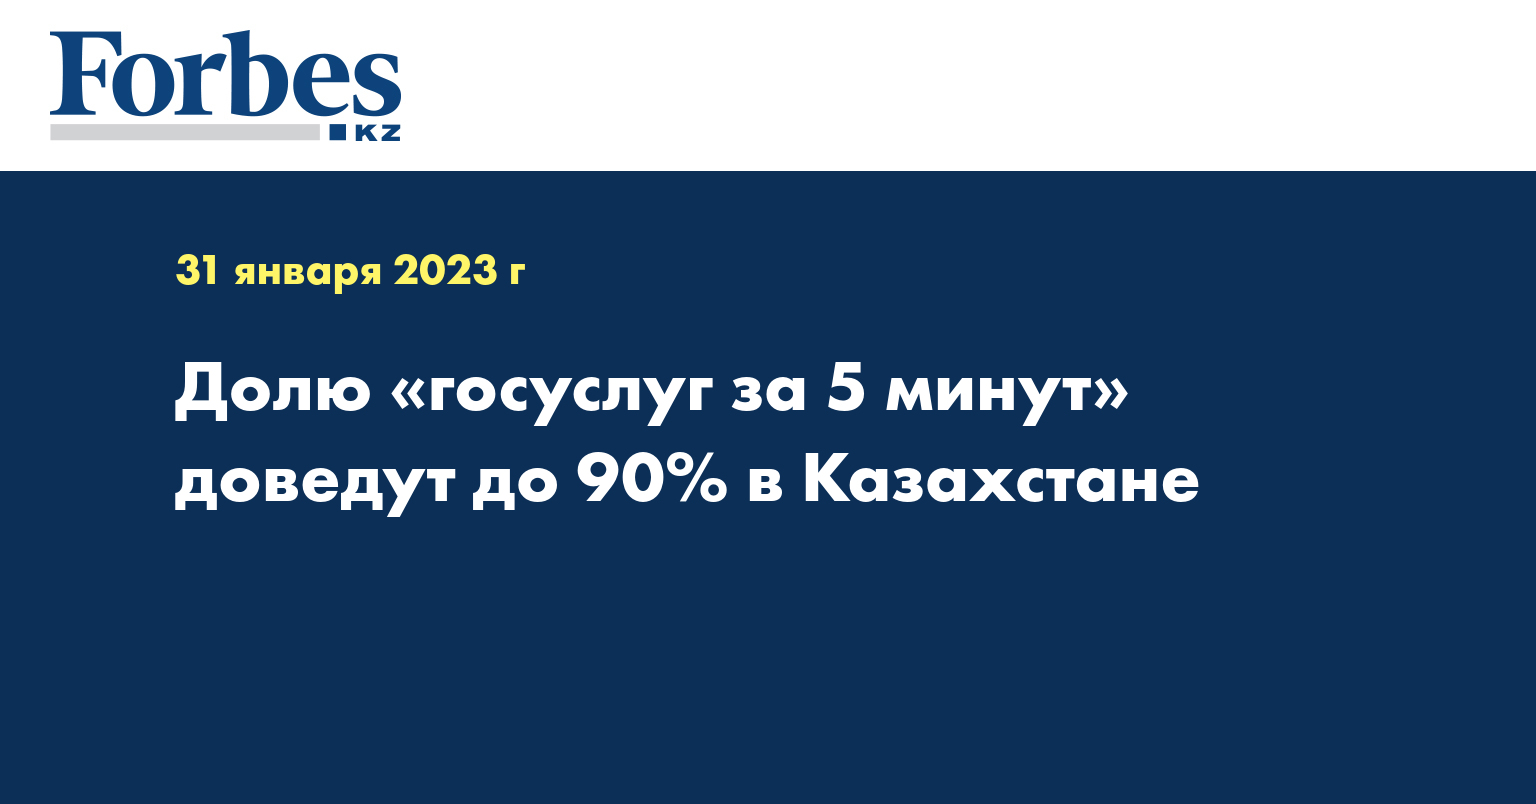 Долю «госуслуг за 5 минут» доведут до 90% в Казахстане